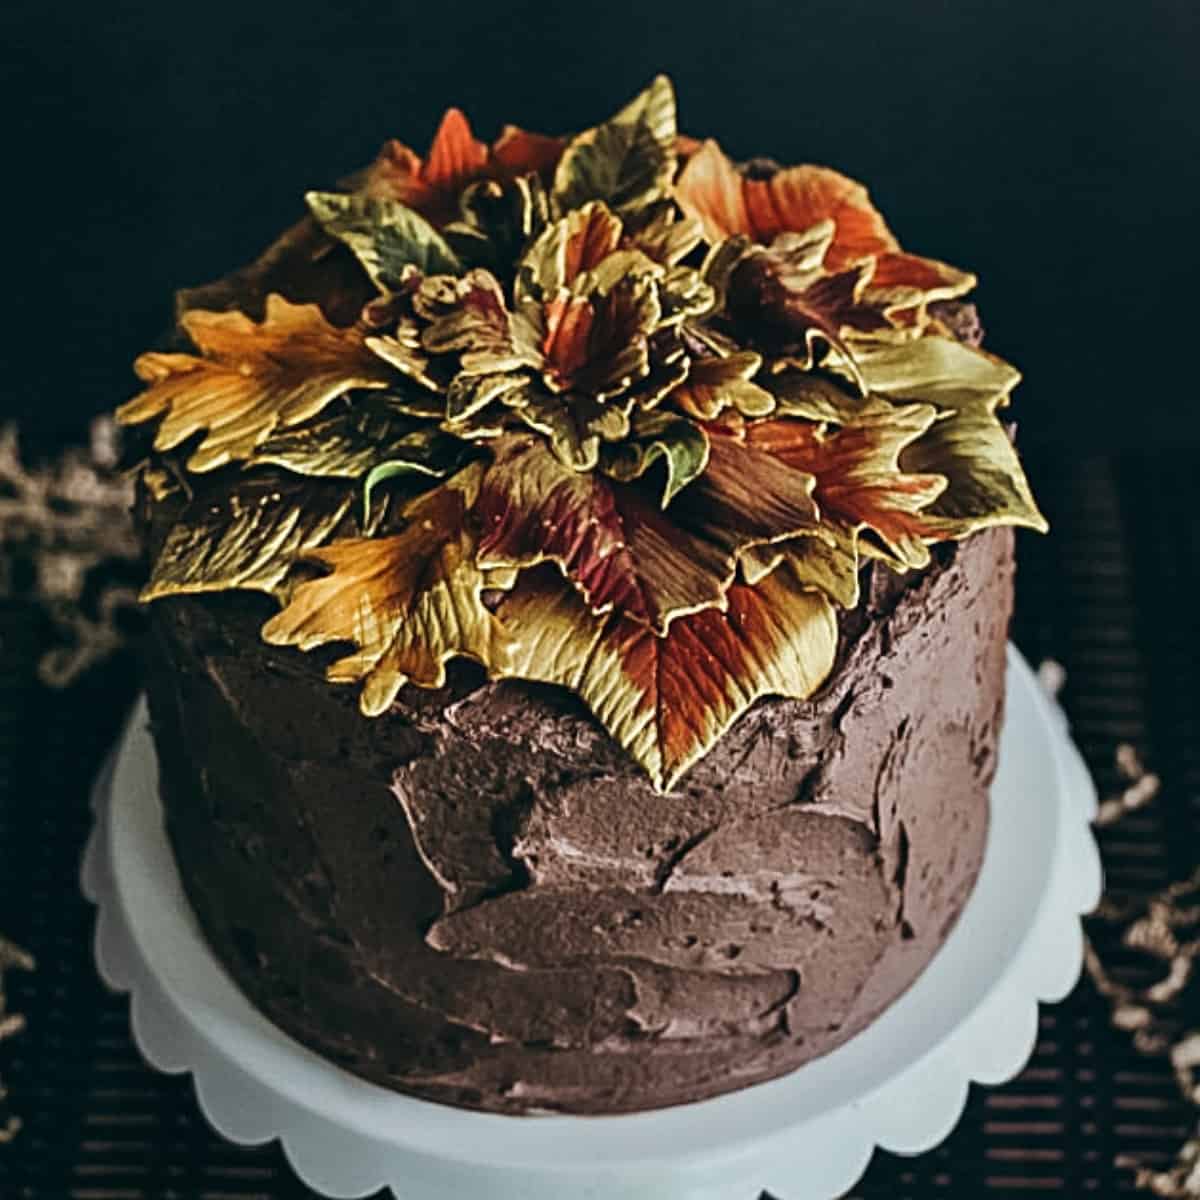 Gilded Leaf Cake - I Scream for Buttercream